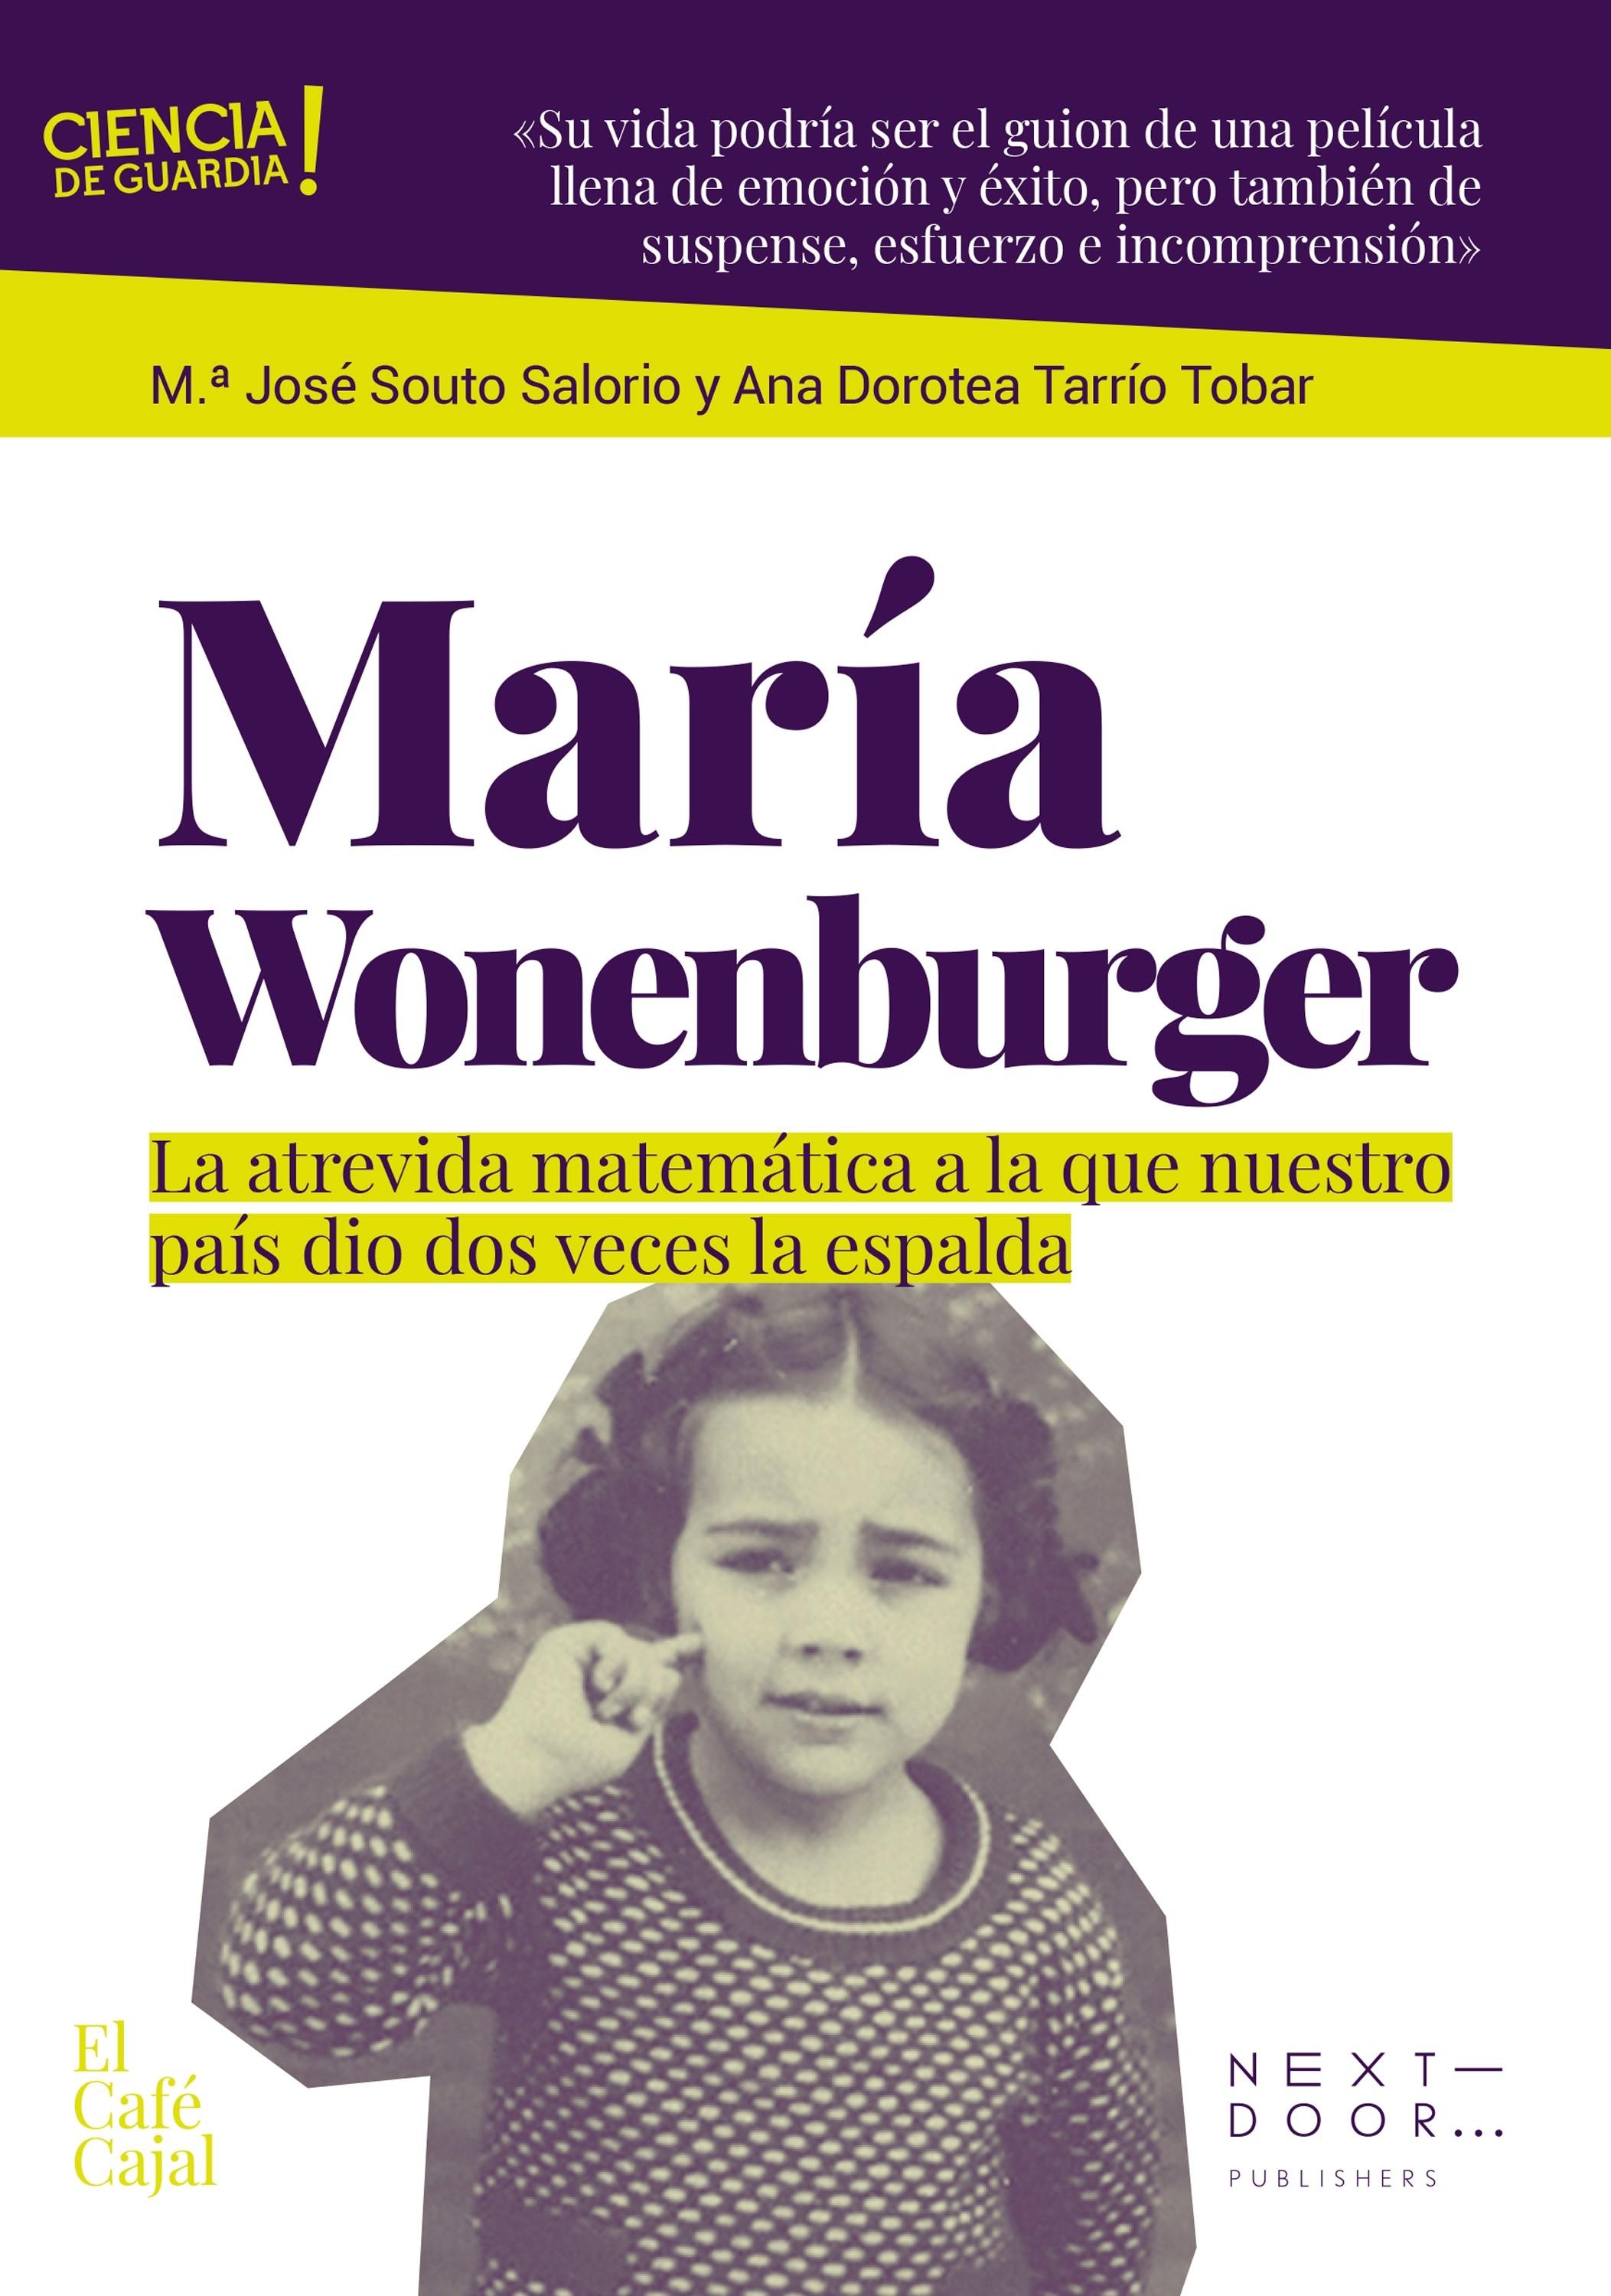 María Wonenburger "La Atrevida Matemática a la que nuestro País le Dio Dos Veces la Espalda"